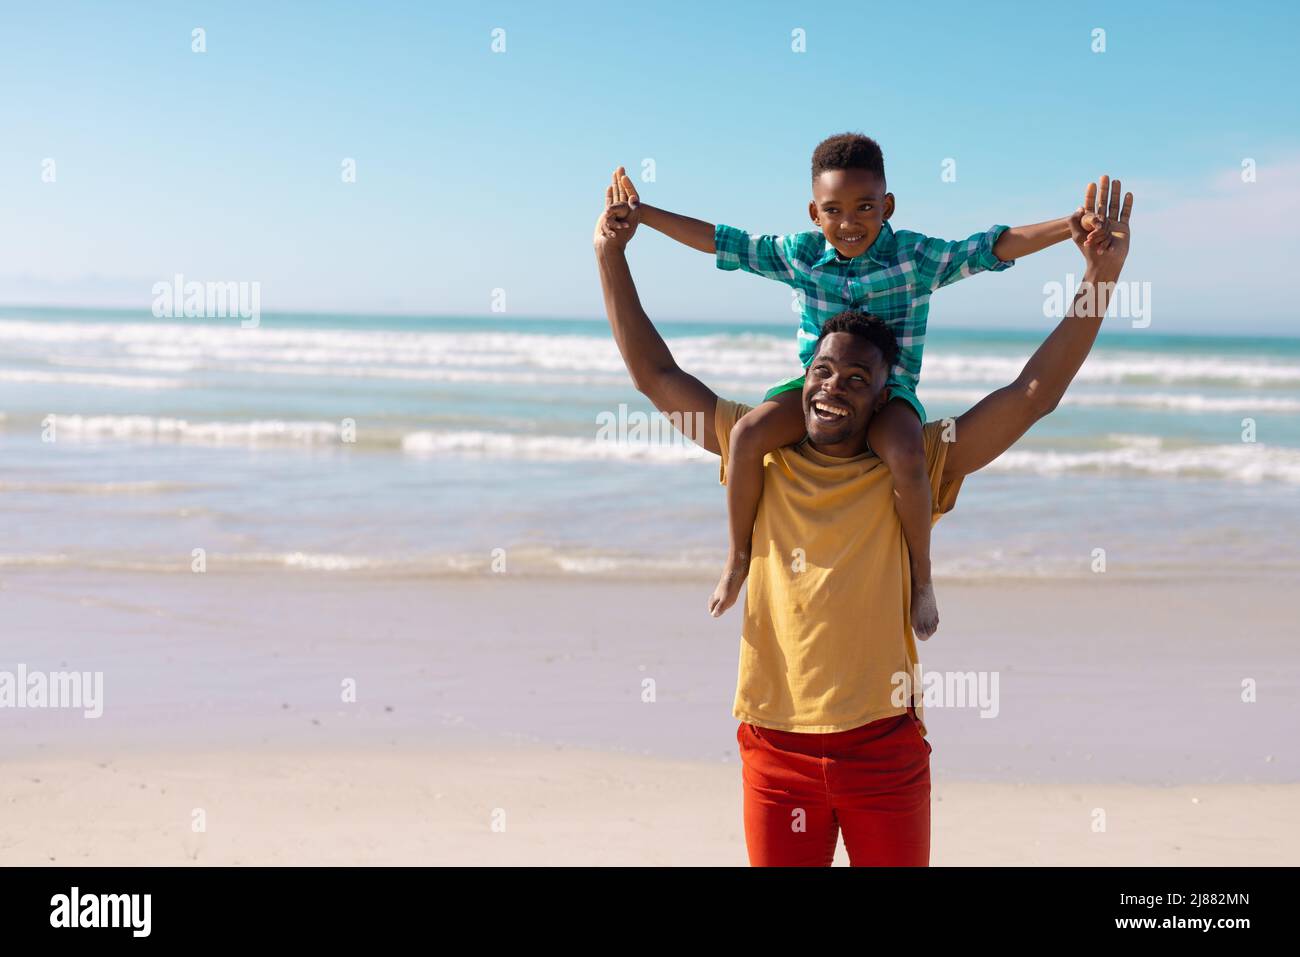 Fröhlicher afroamerikanischer junger Mann, der seinen Sohn auf Schultern trägt und gegen das Meer und den blauen Himmel steht Stockfoto